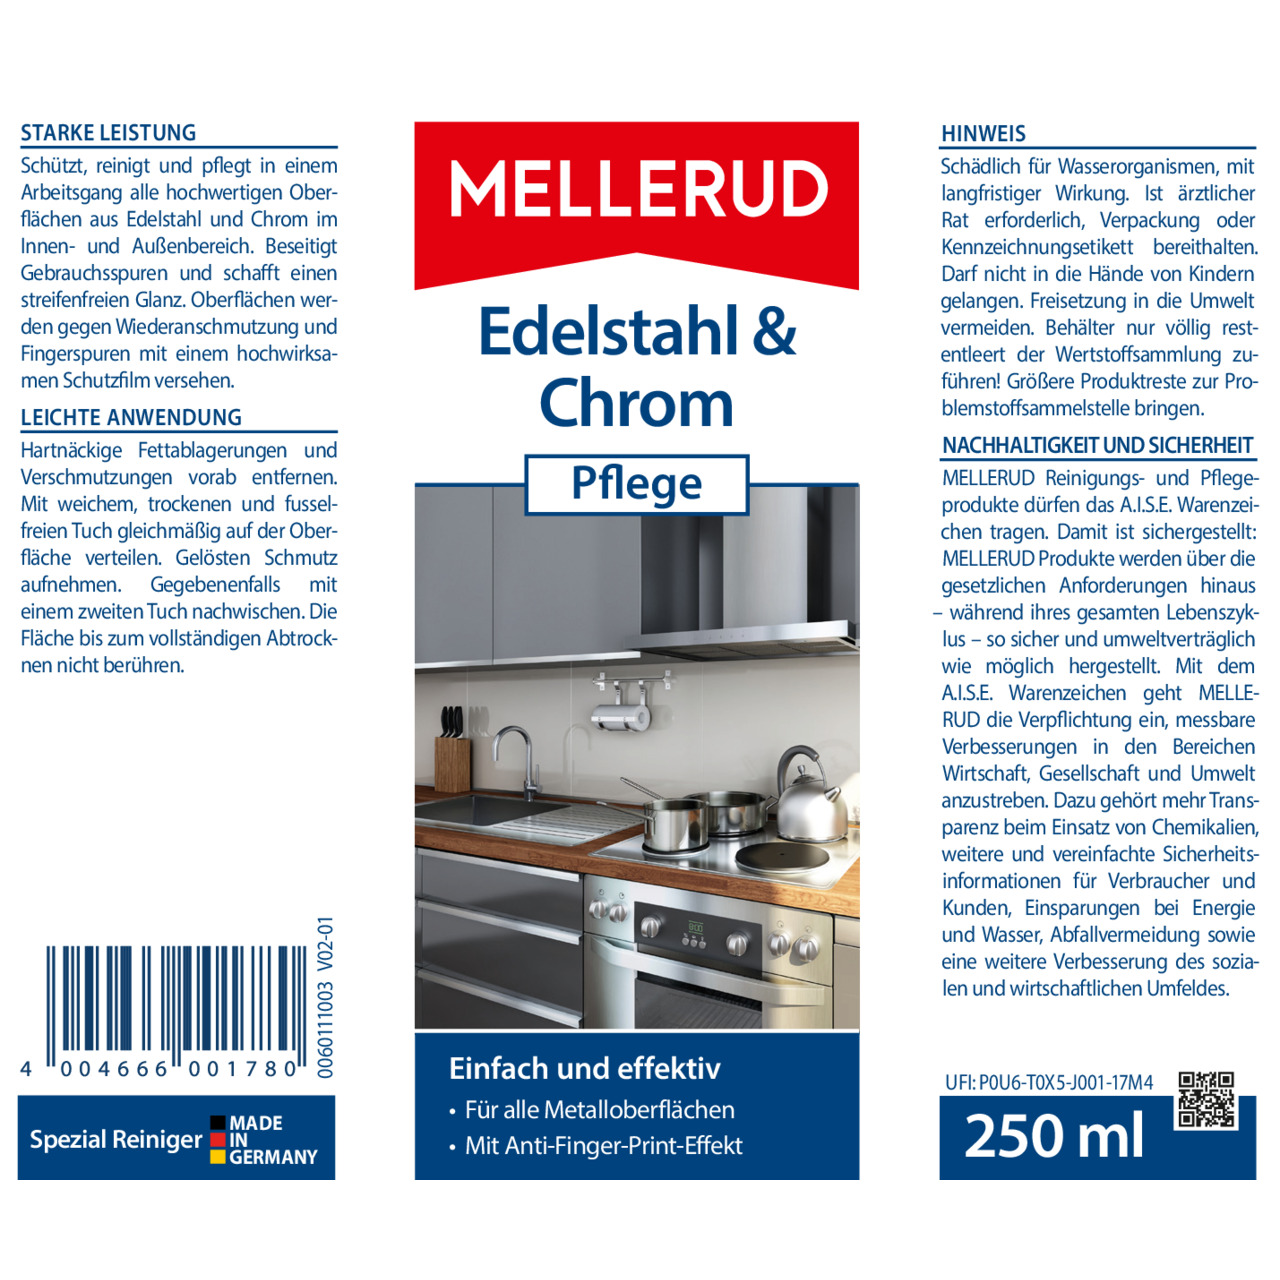 Edelstahl & Chrom Pflege 0,25 l